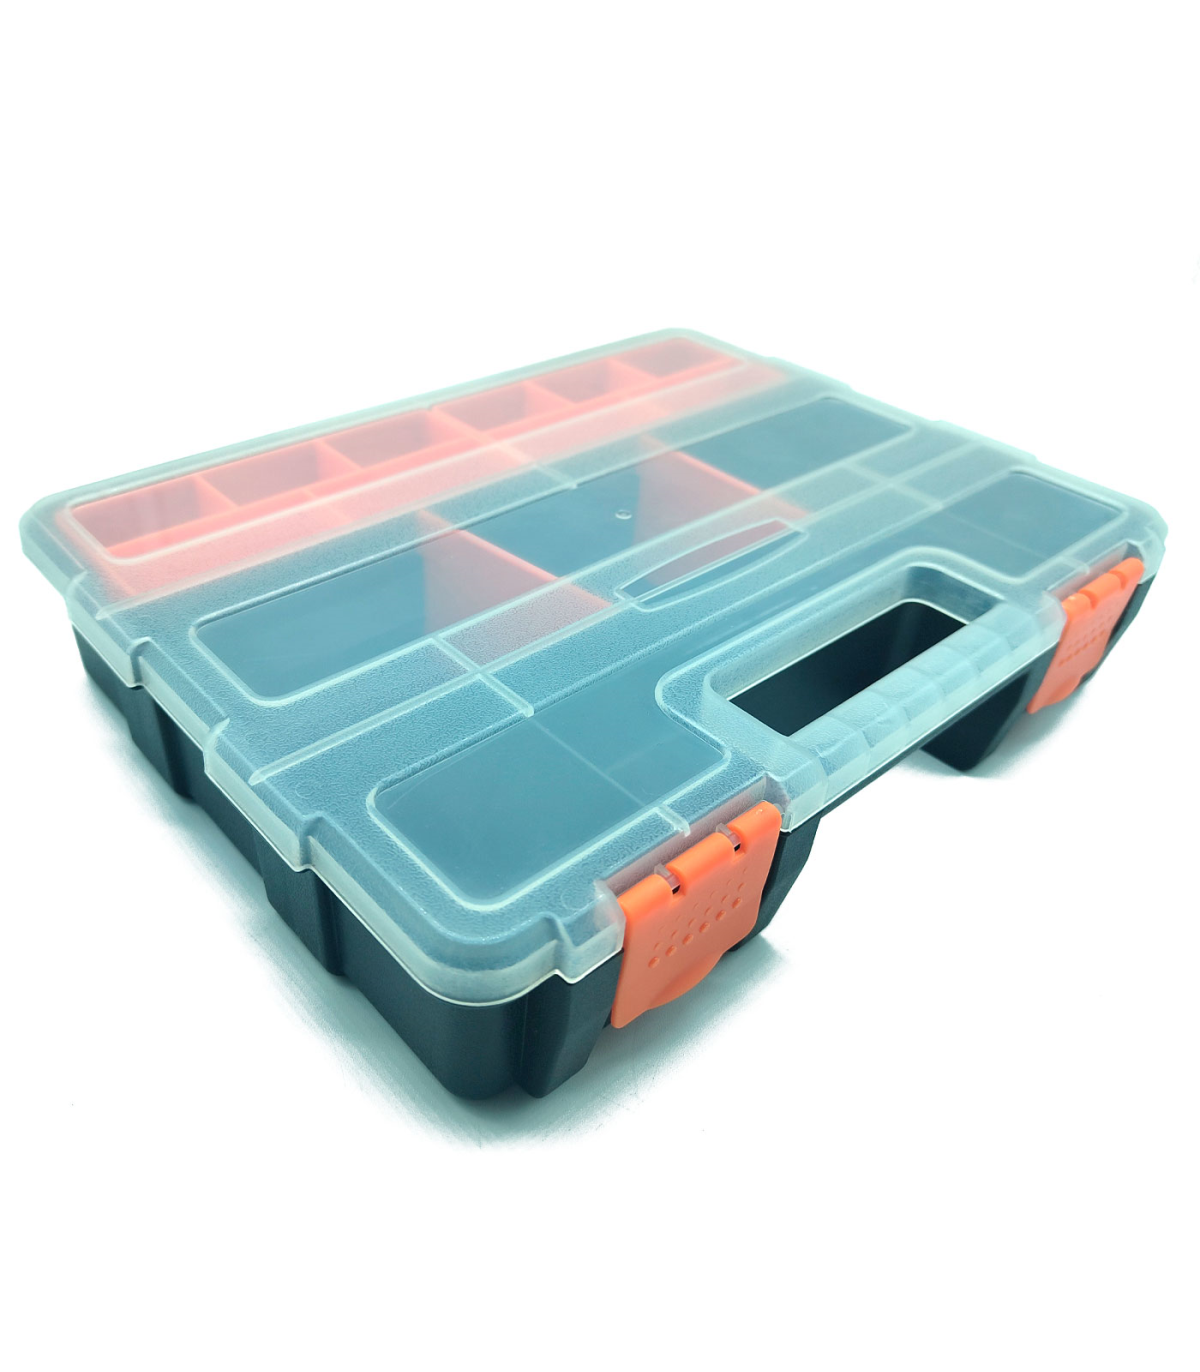 Tradineur - Pack de 3 separadores para cajones - Fabricados en